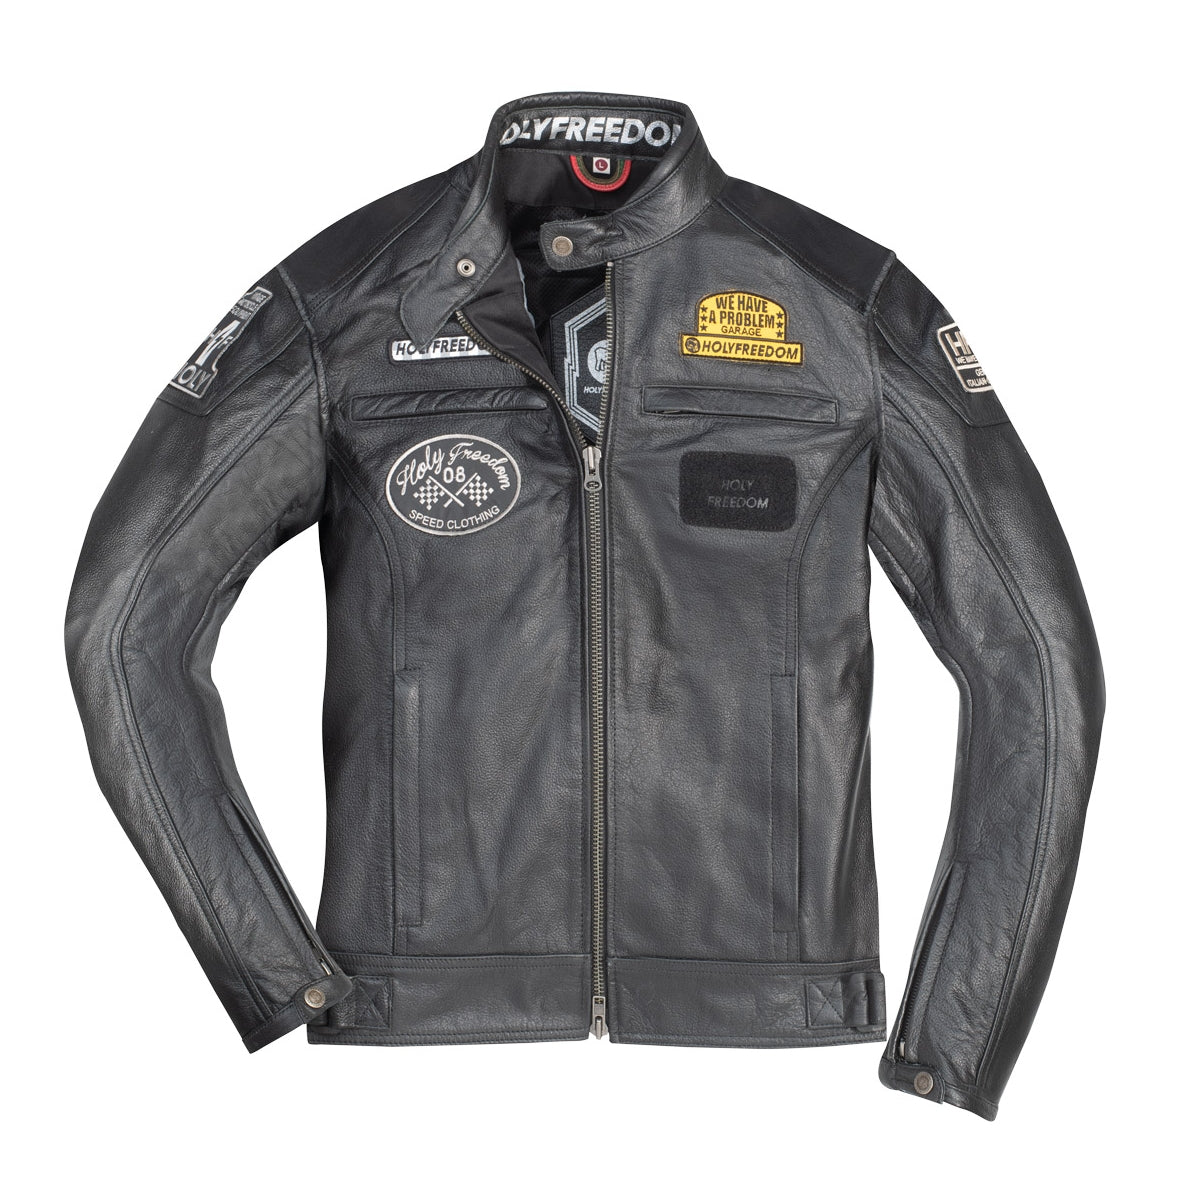 Holyfreedom Level Leather Jacket - Black